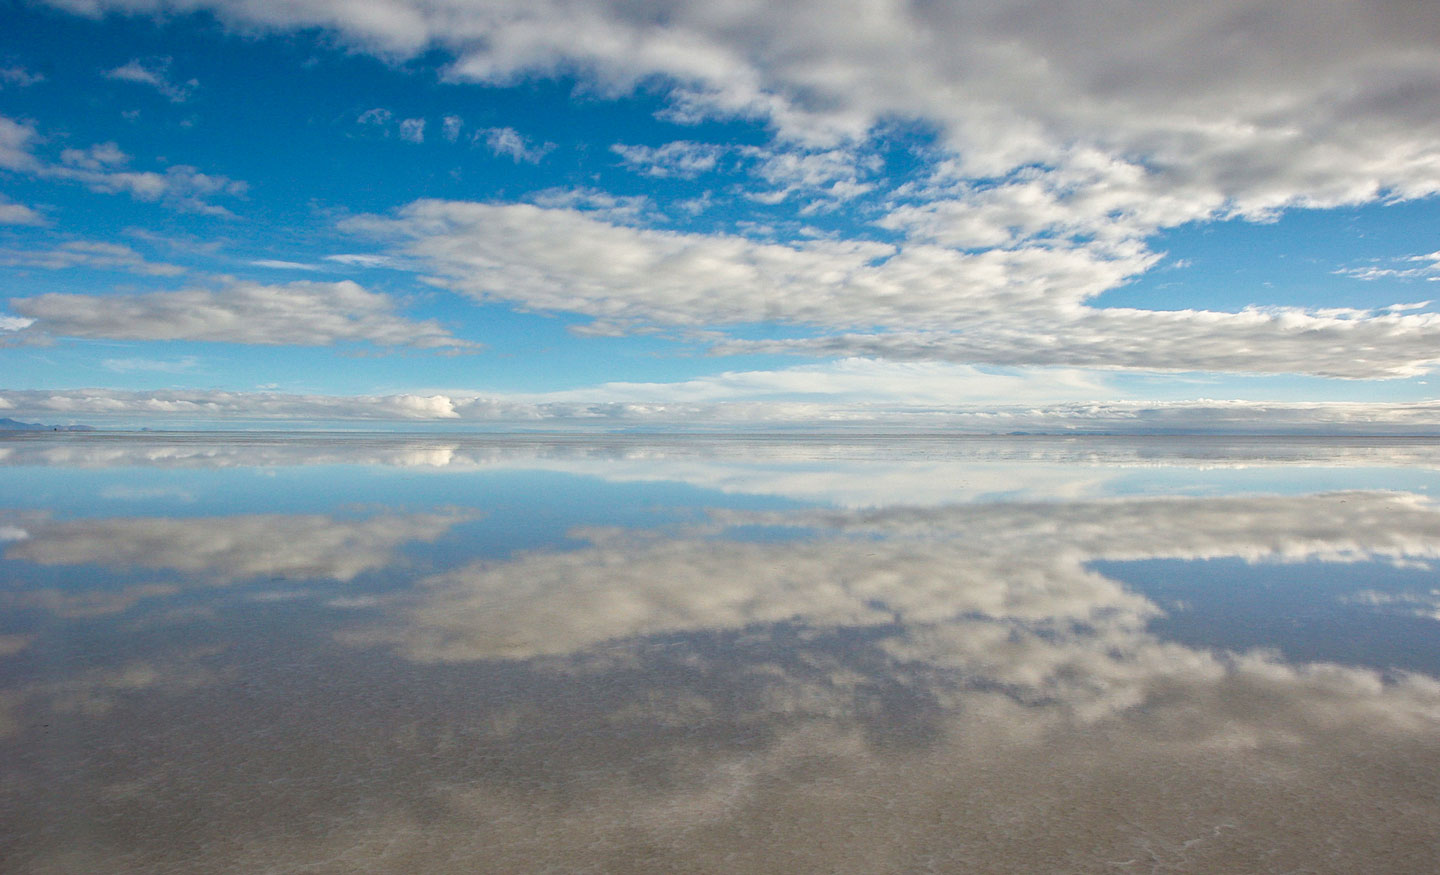 Sky reflection in the Salar de Uyuni, the largest salt pan on earth.